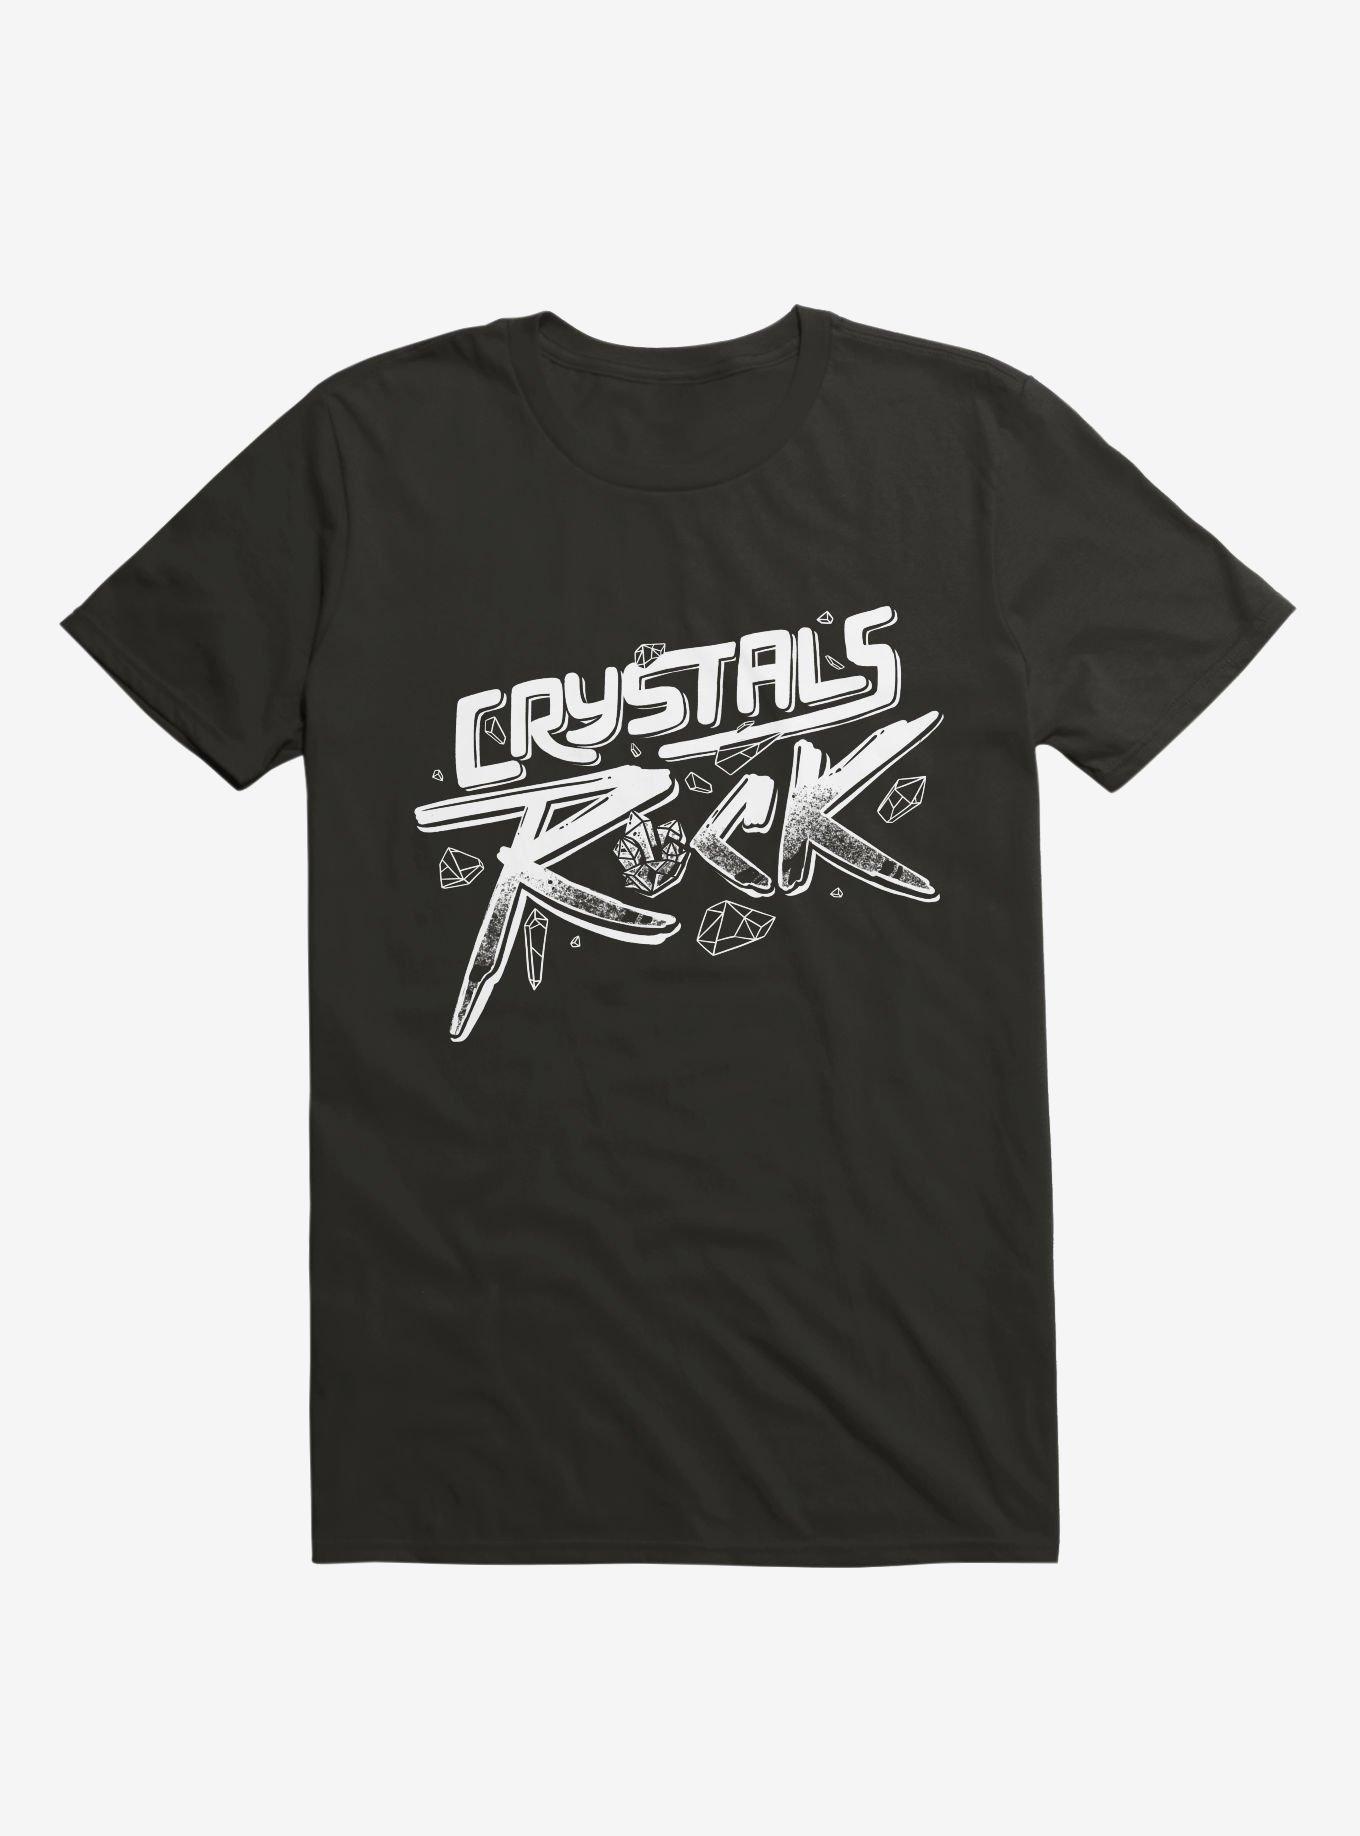 Crystals ROCK! T-Shirt, BLACK, hi-res